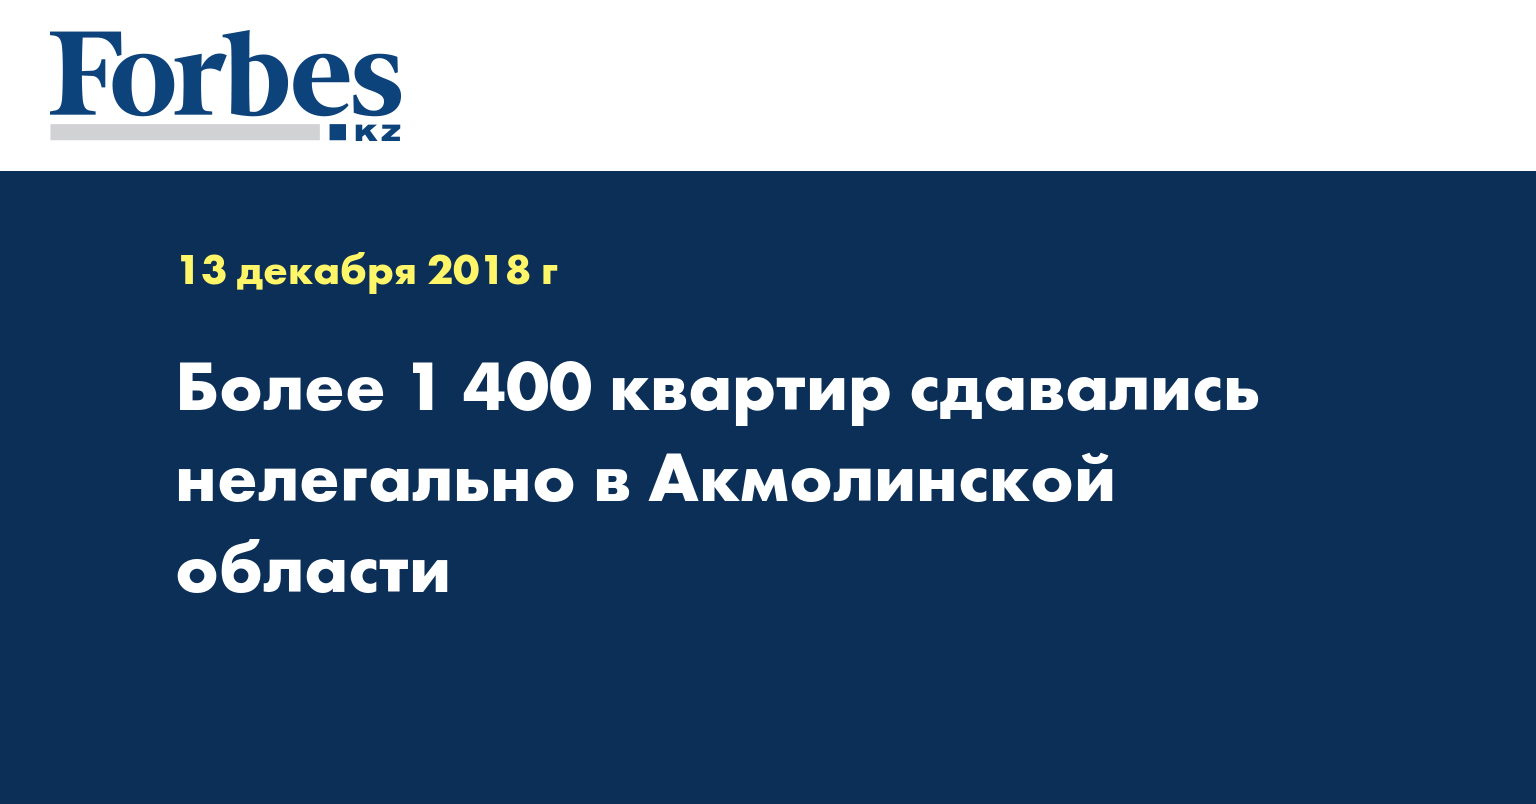 Более 1 400 квартир сдавались нелегально в Акмолинской области